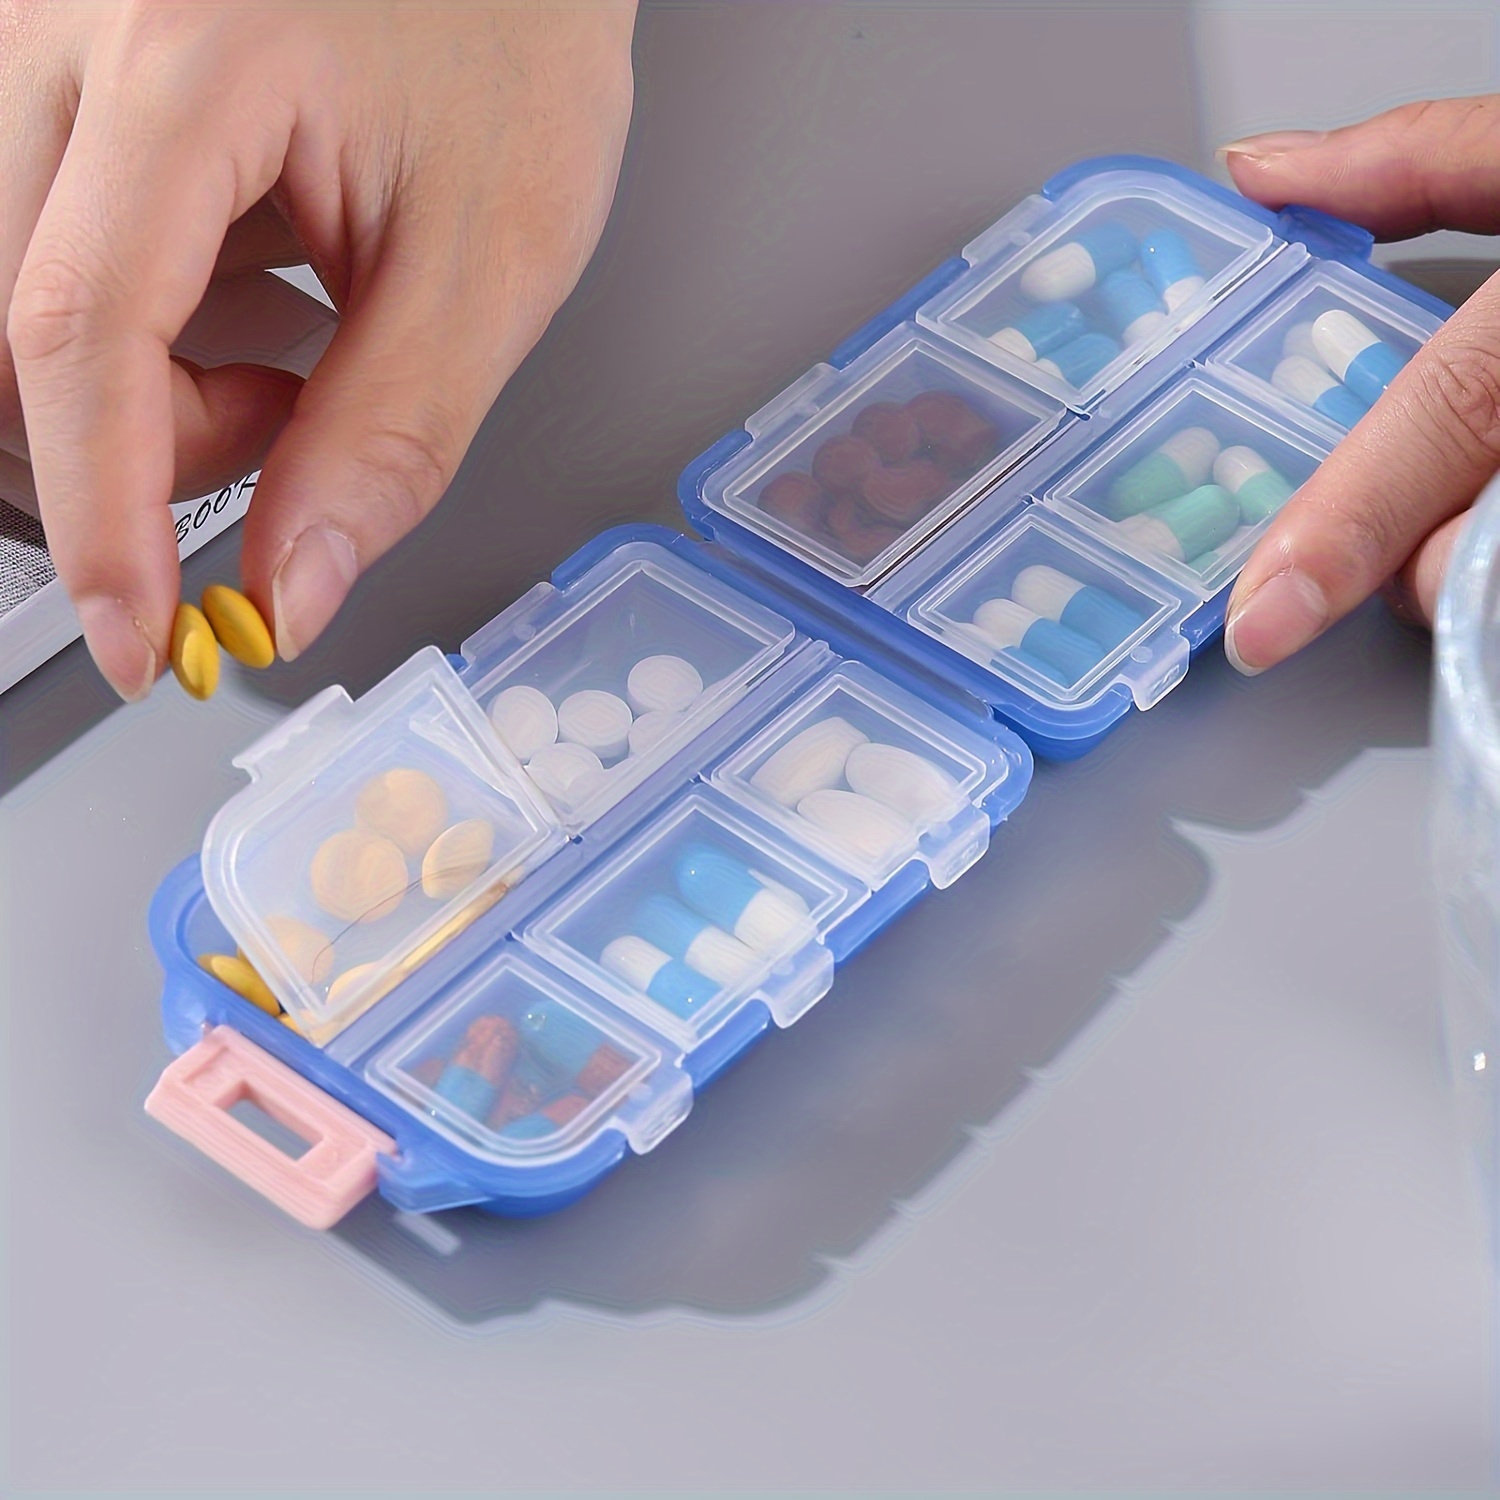 6 Pcs Supplements Organizer Crafts Organizer Storage Box Vitamin Container